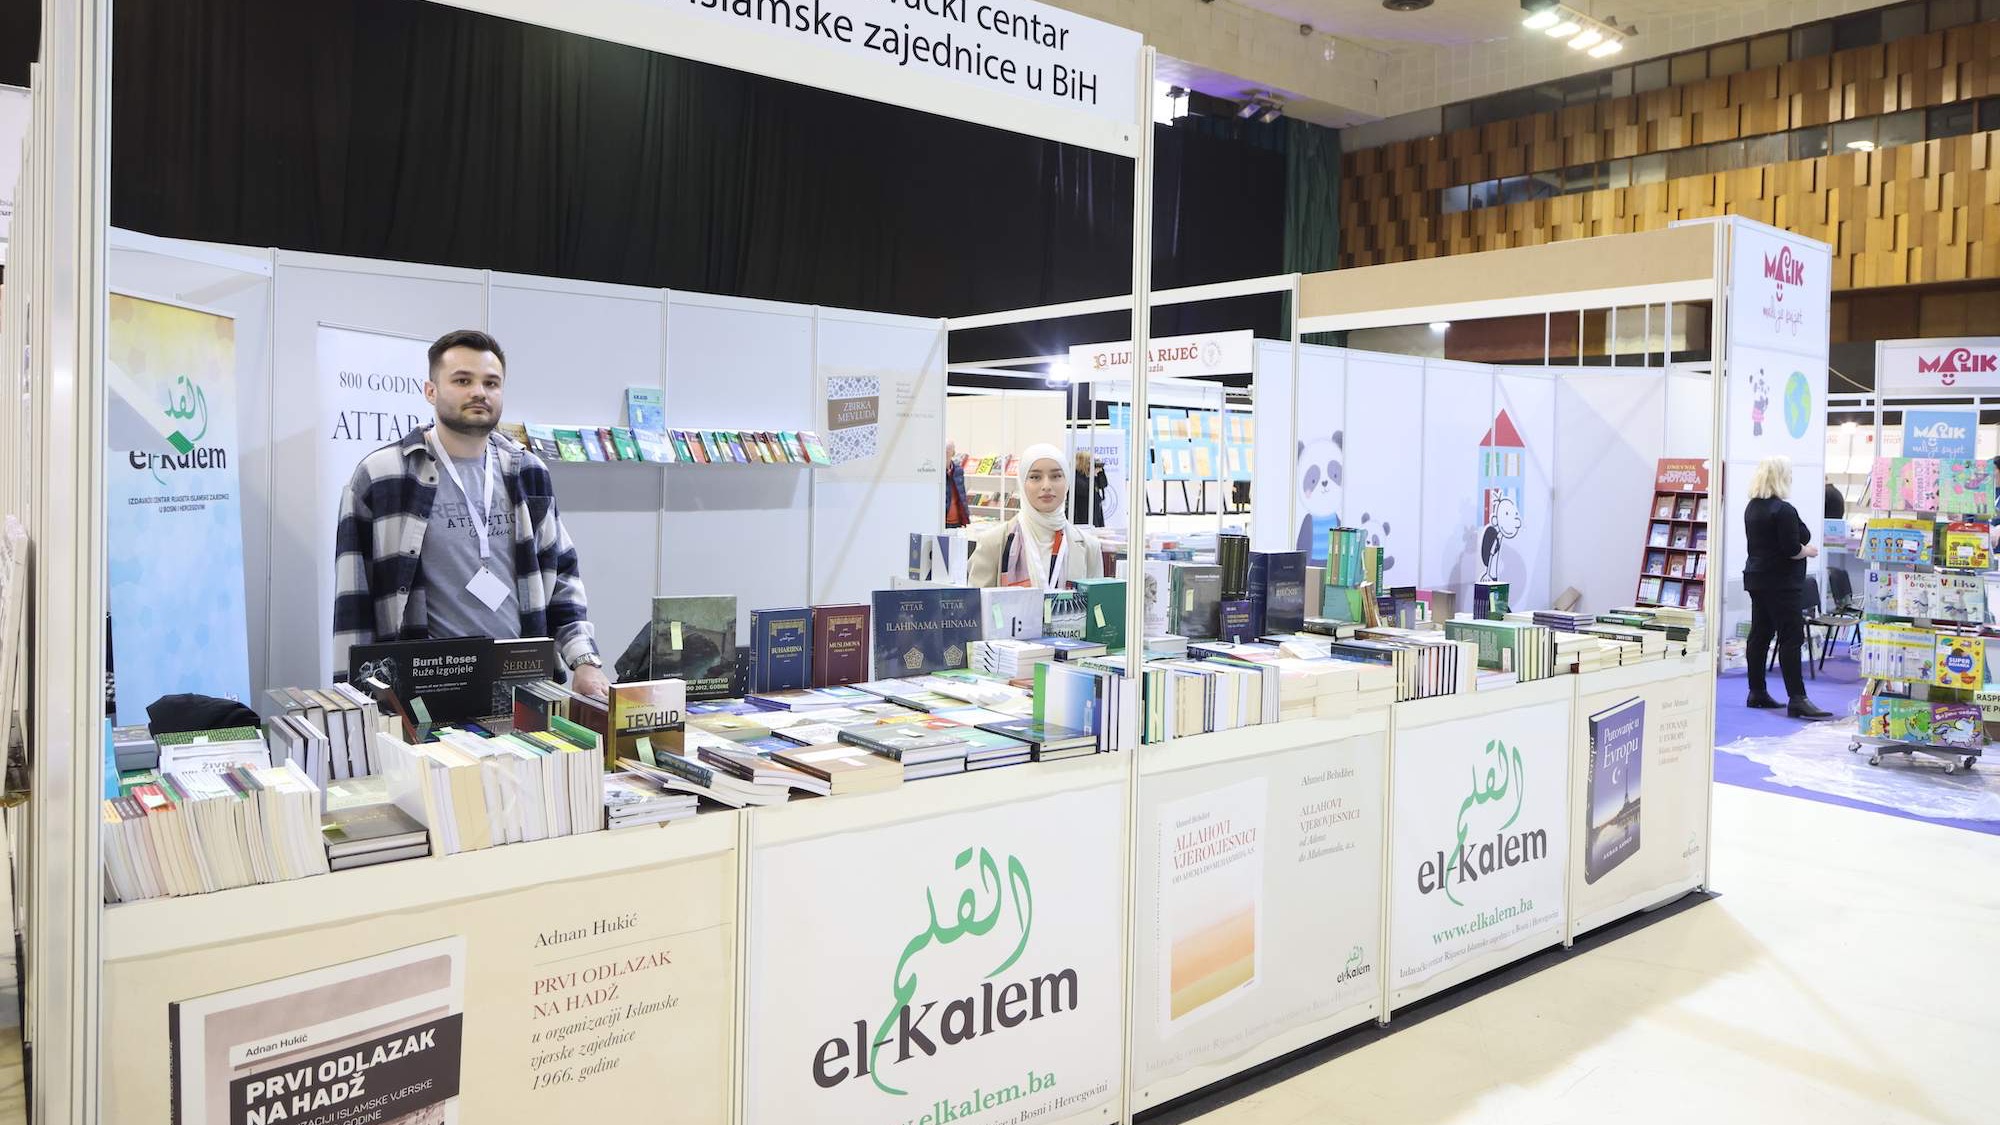 Otvoren 35. međunarodni sarajevski sajam knjiga: Među izlagačima i El-Kalem (VIDEO)